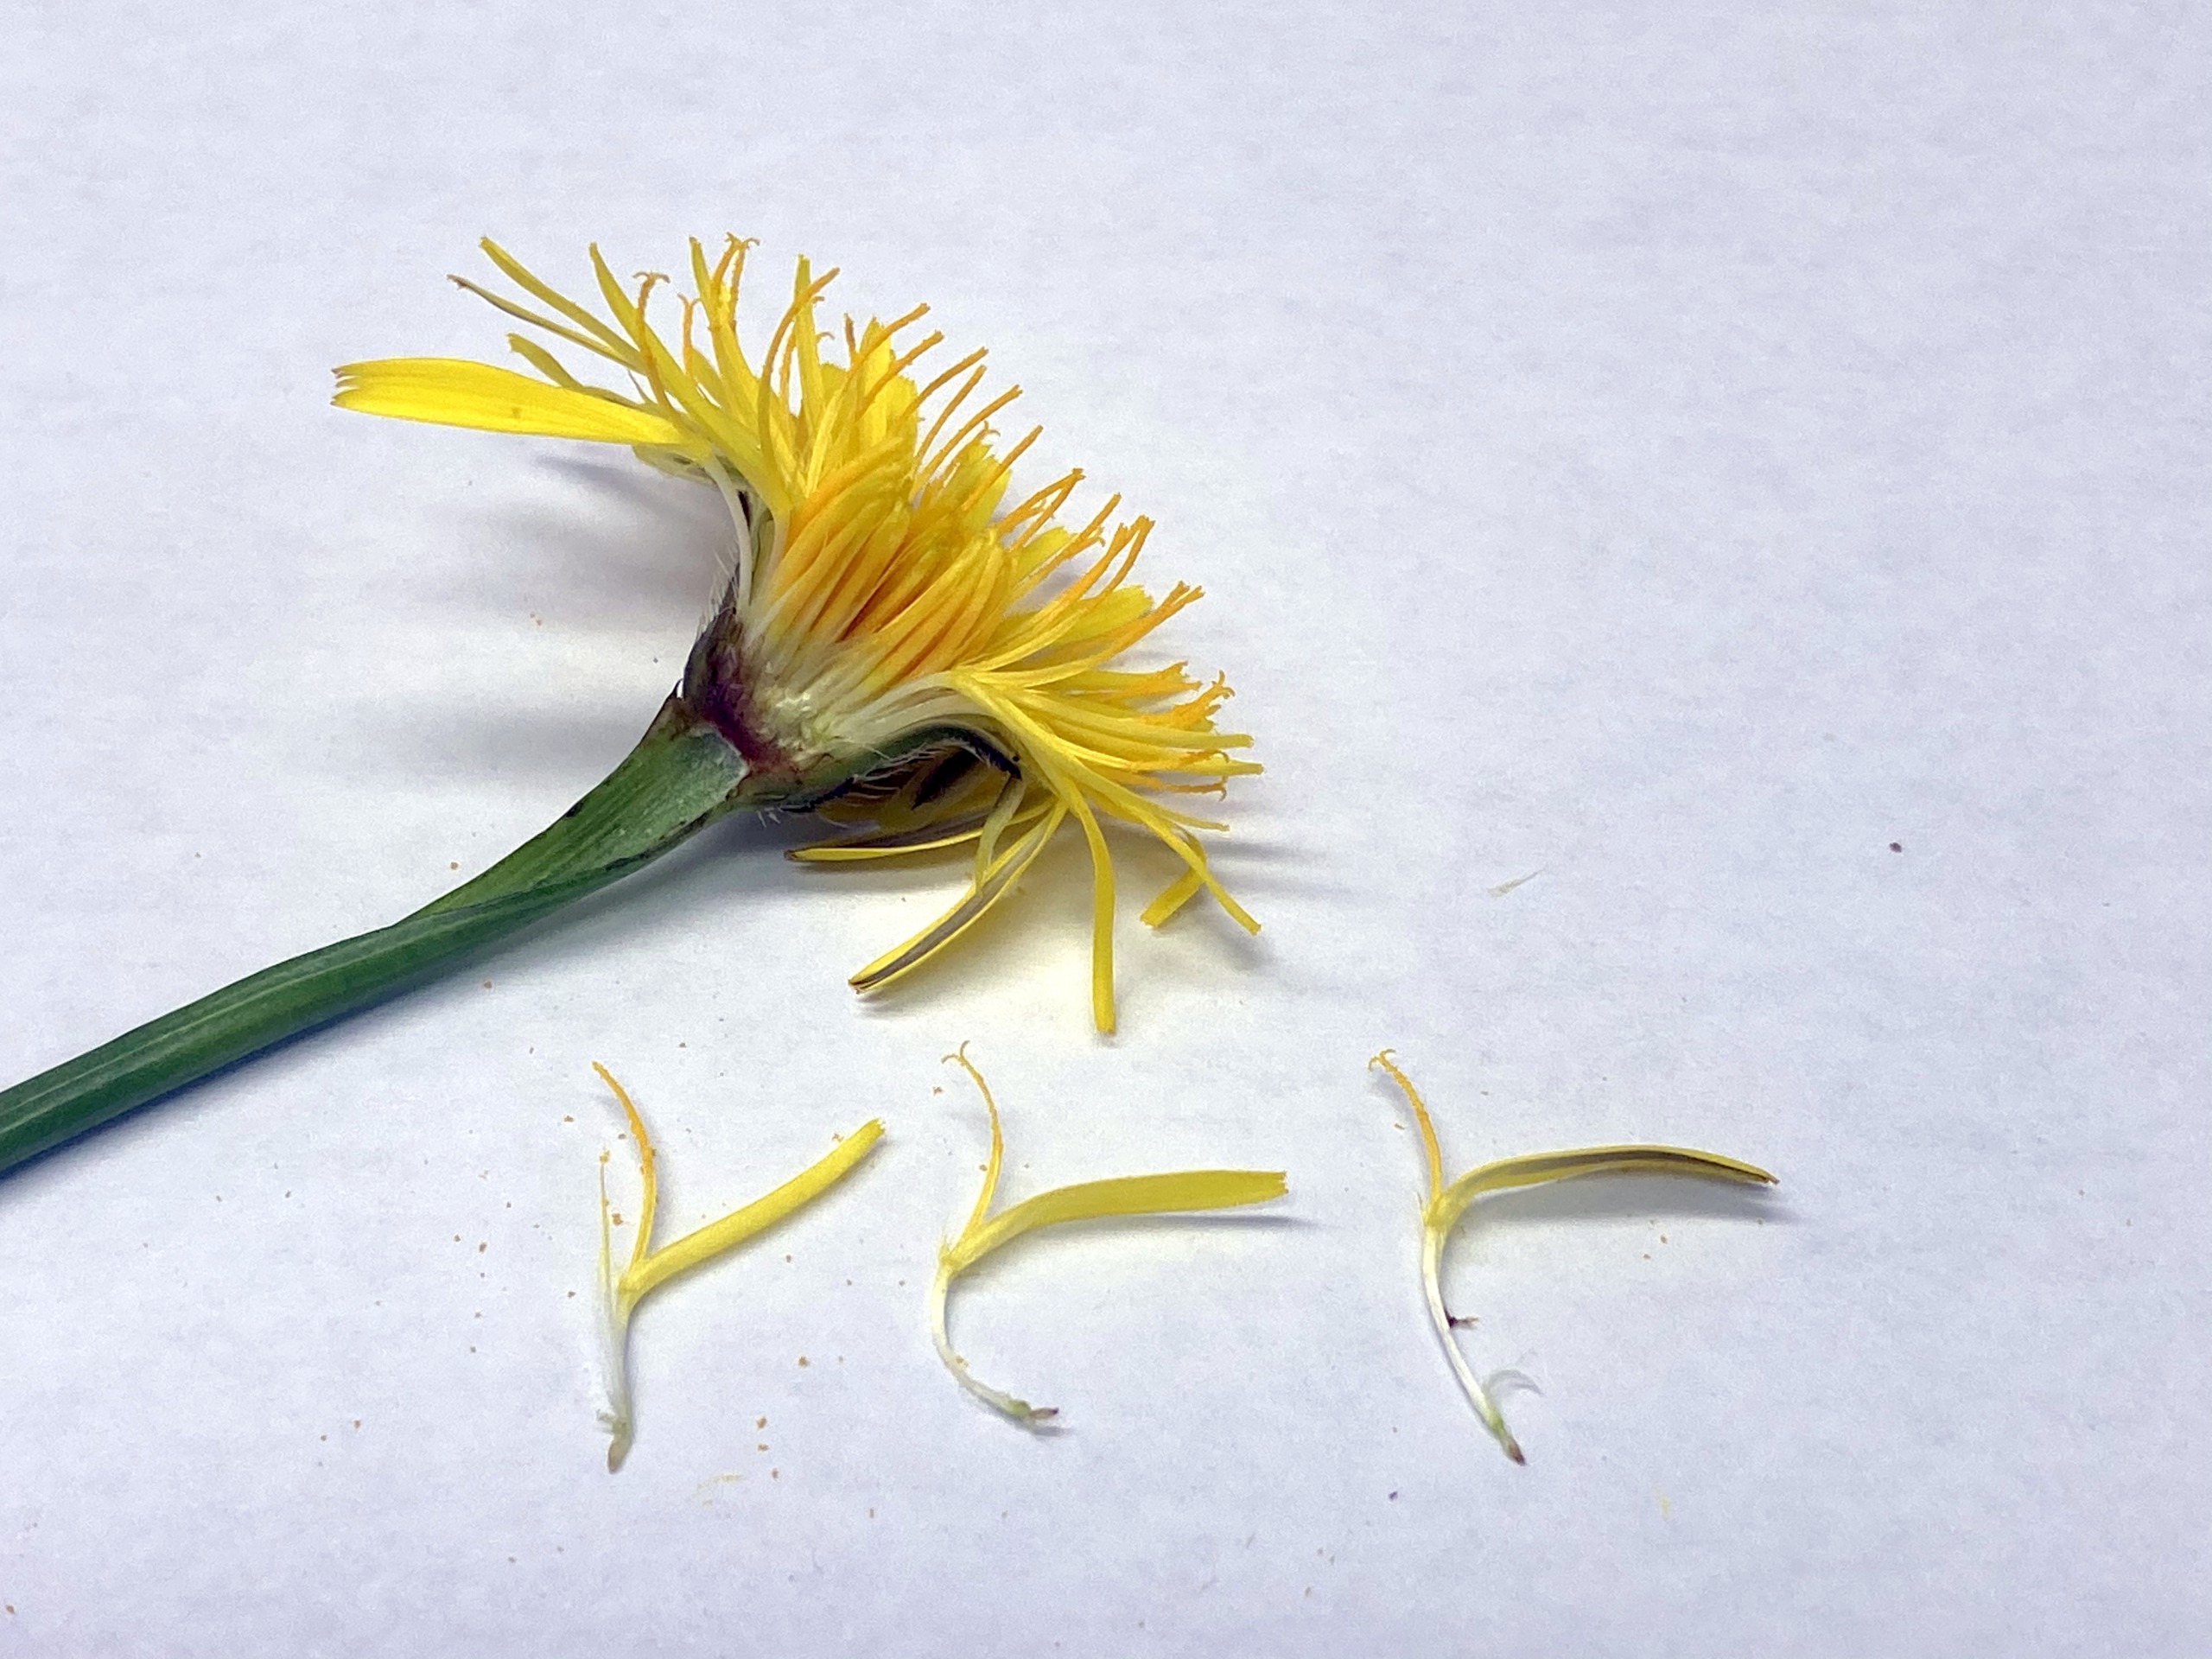 ご近所の草花 タンポポそっくりな花は何だろう 広島市植物公園の久保さんに聞いてみた まるごと安佐南 安佐北ブログ